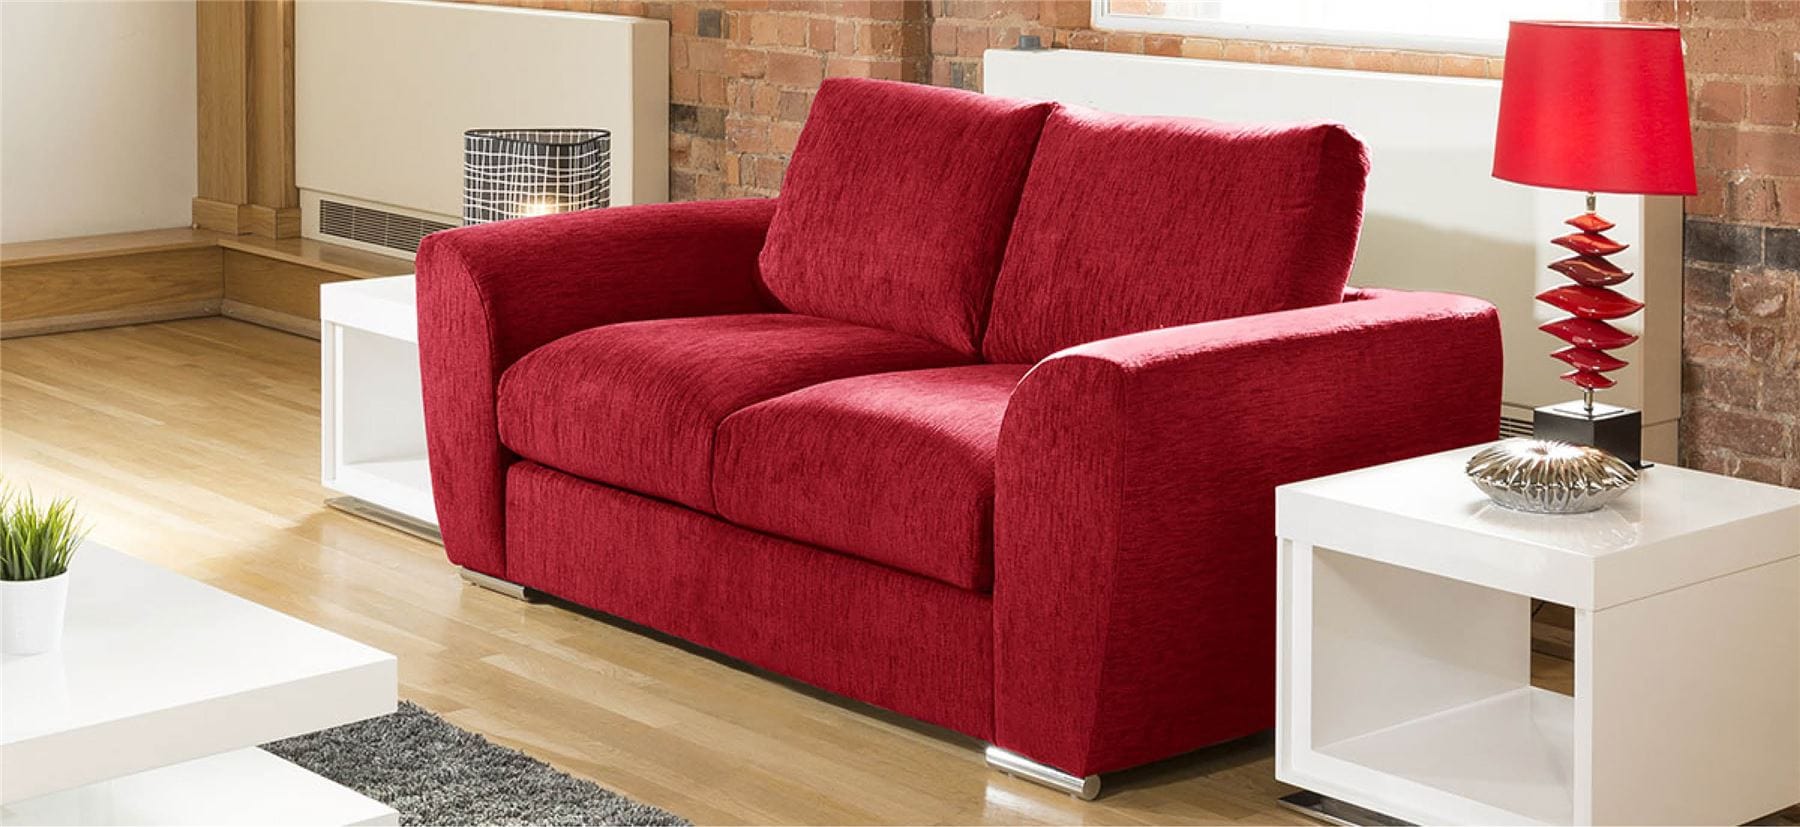 Quatropi Quatropi Modern Designer 2 Seater Settee/Sofa Made to Order Grey Fabric